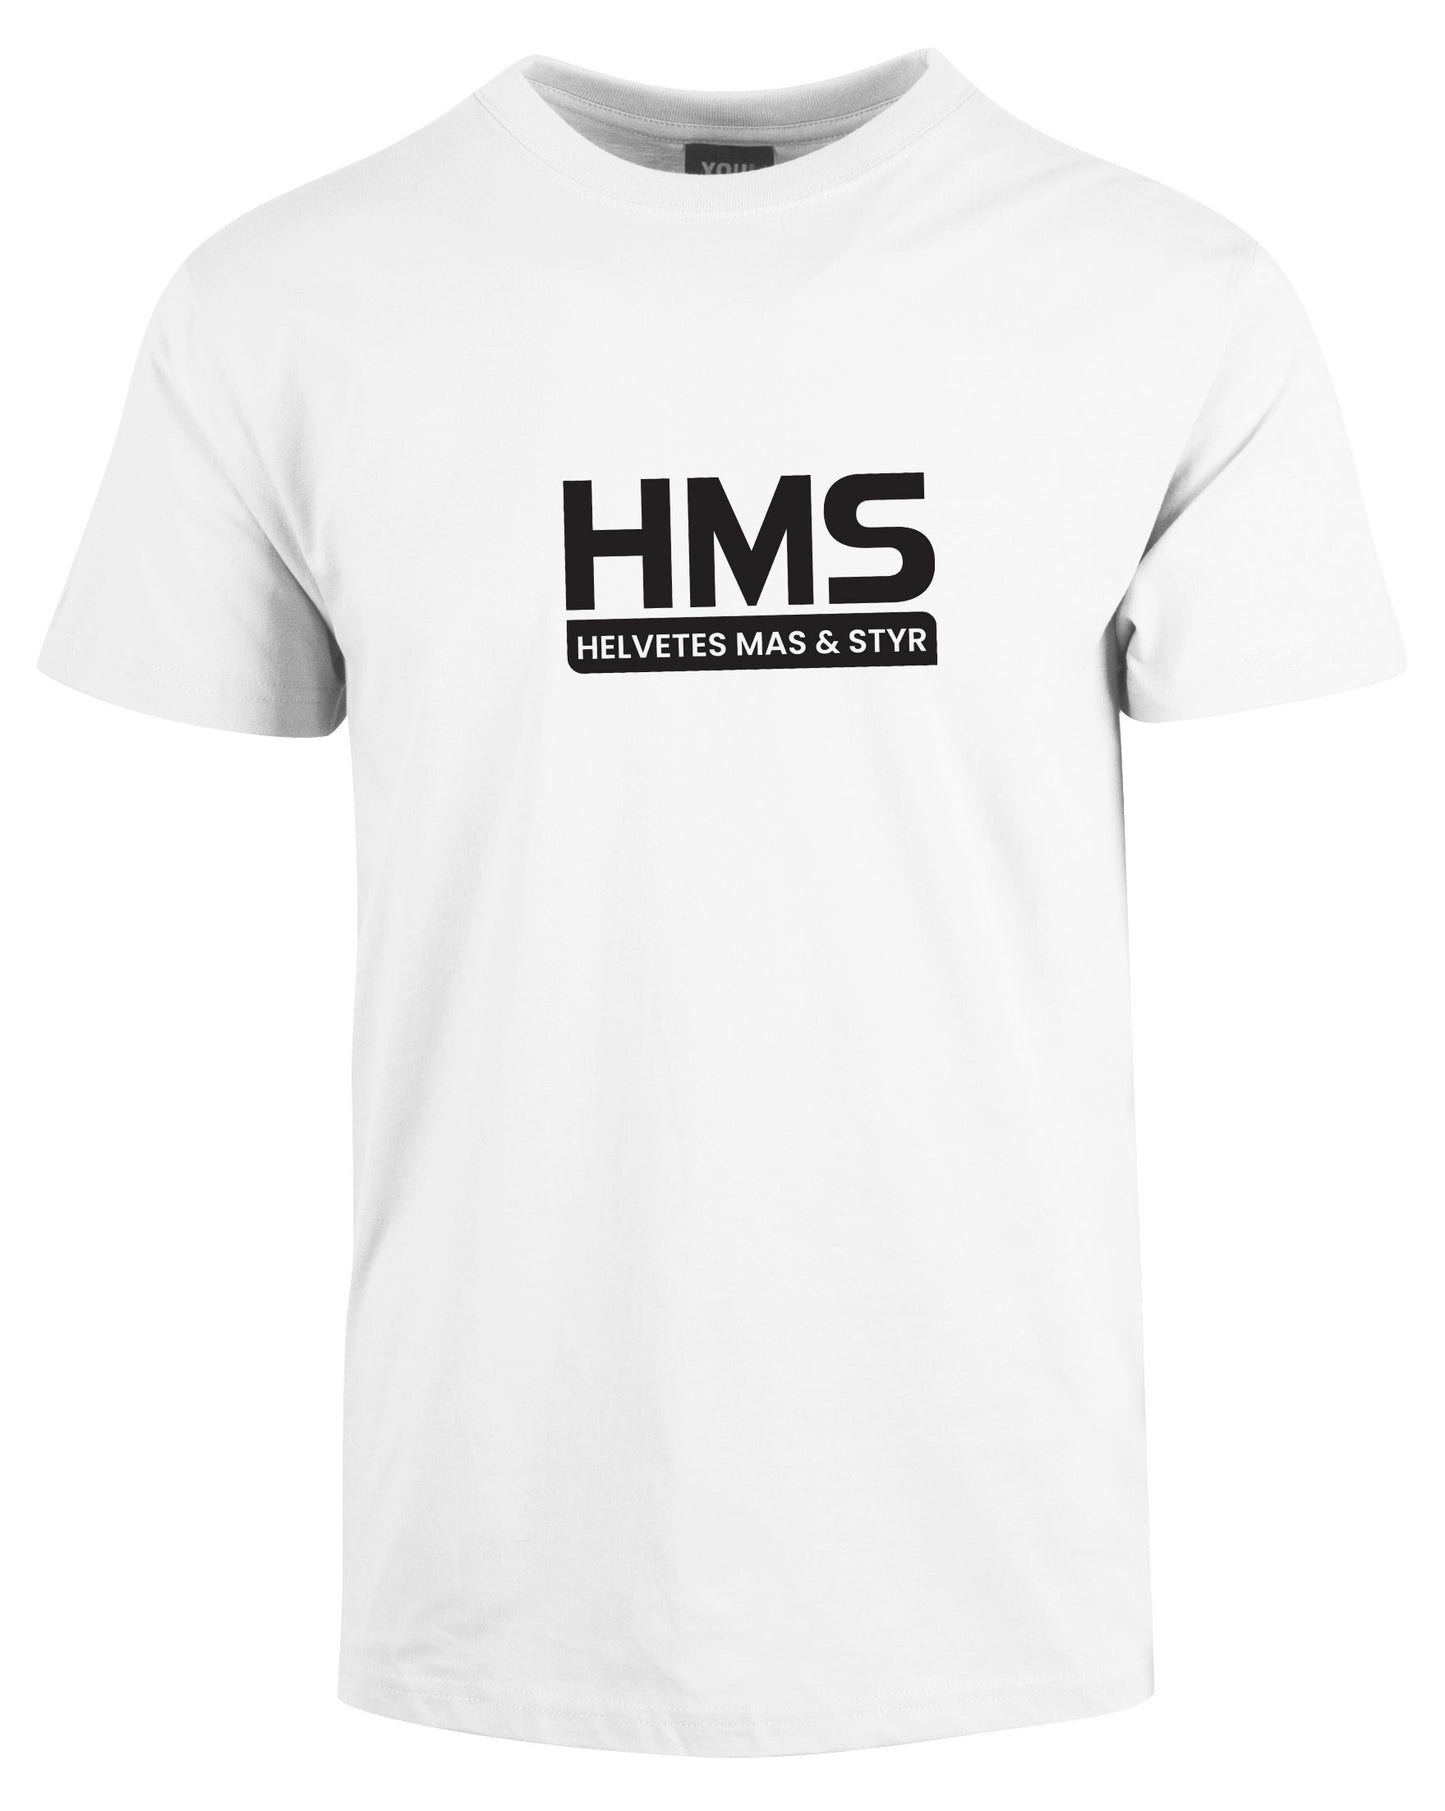 HMS 2.0 - t-skjorte